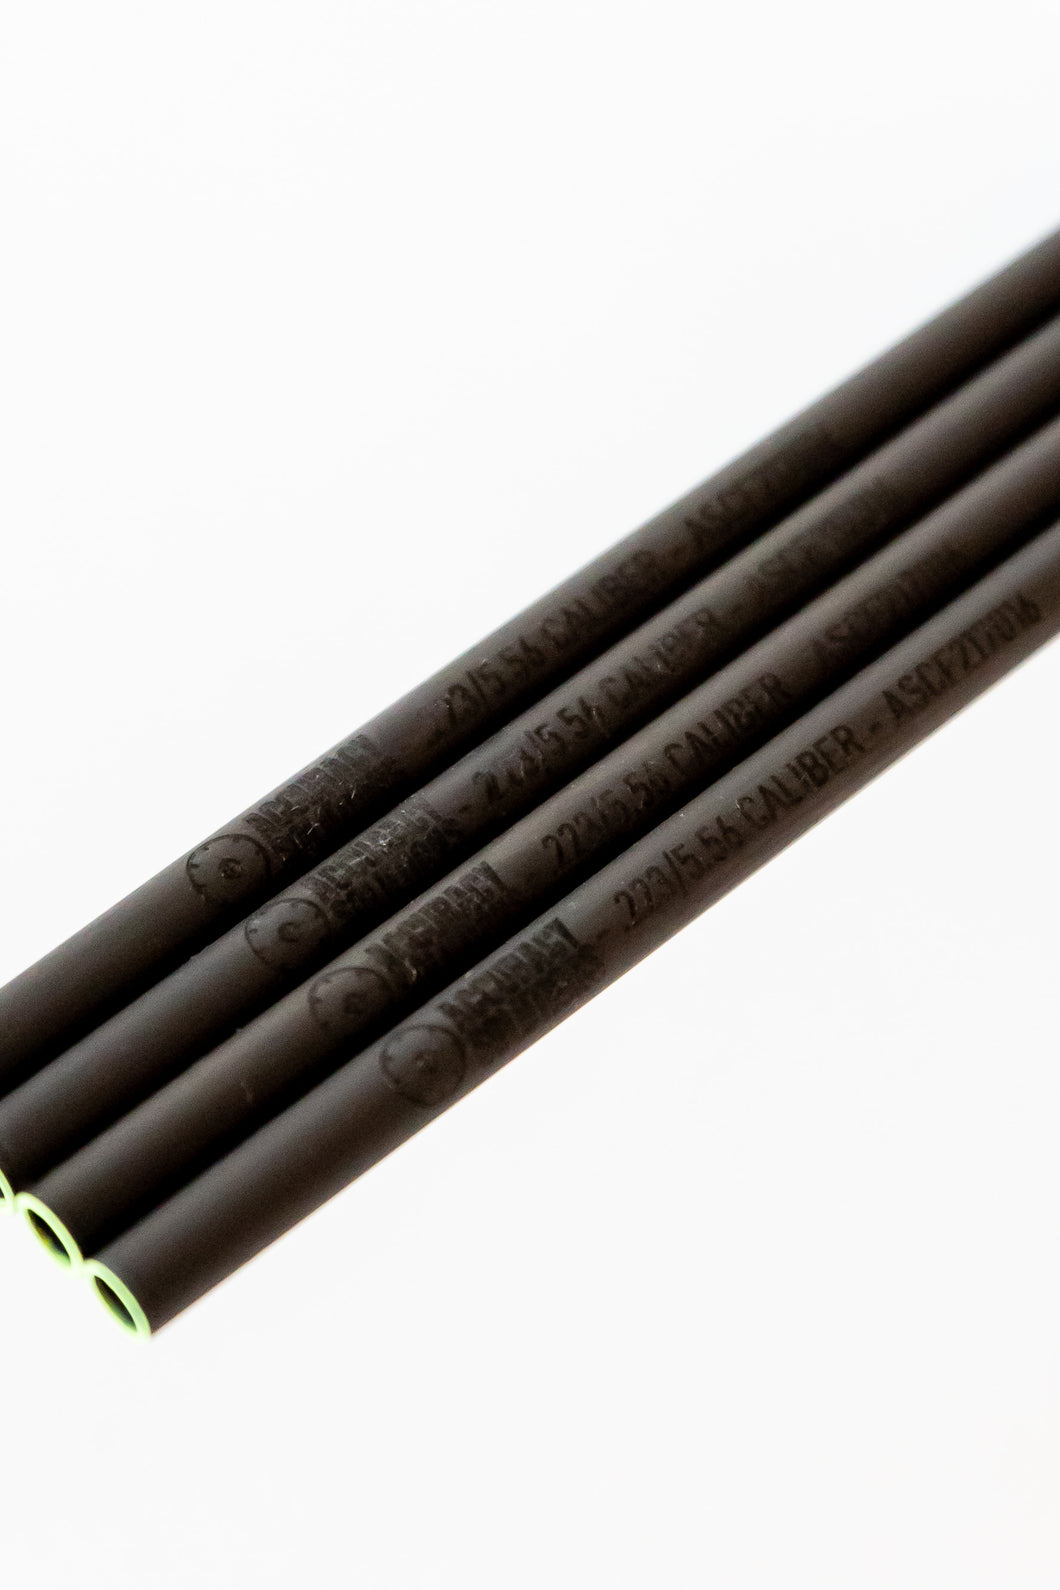 .223/5.56 Carbon Fiber Bore Alignment Rod